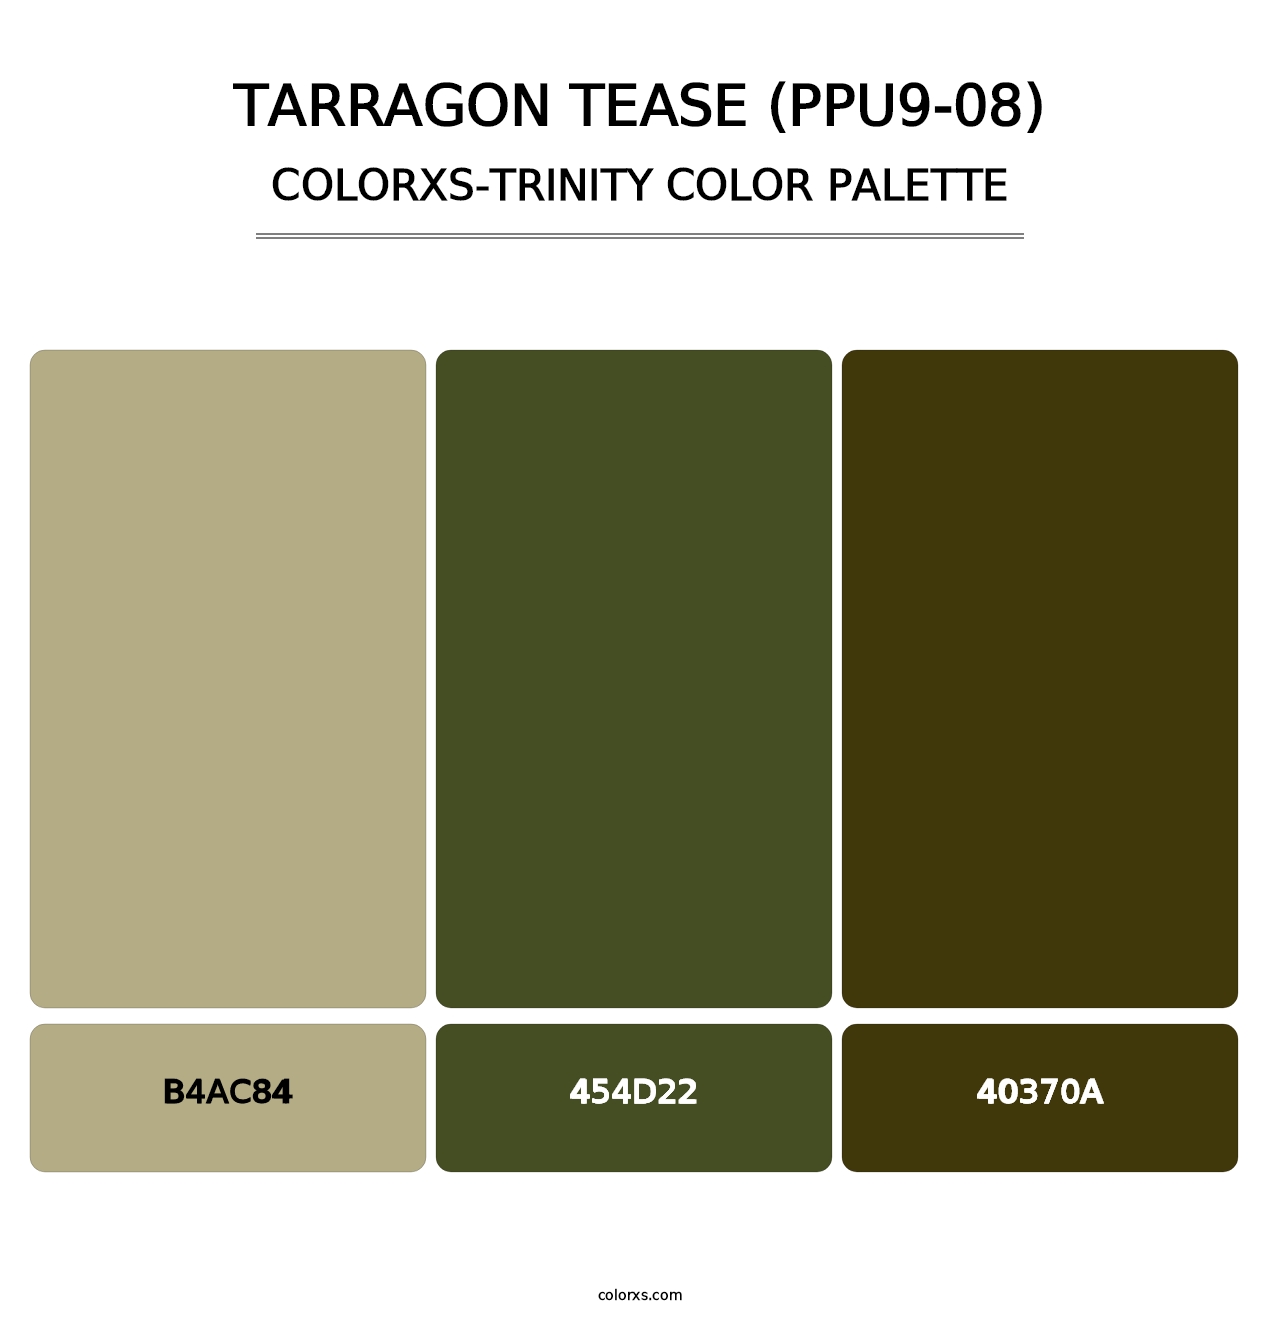 Tarragon Tease (PPU9-08) - Colorxs Trinity Palette